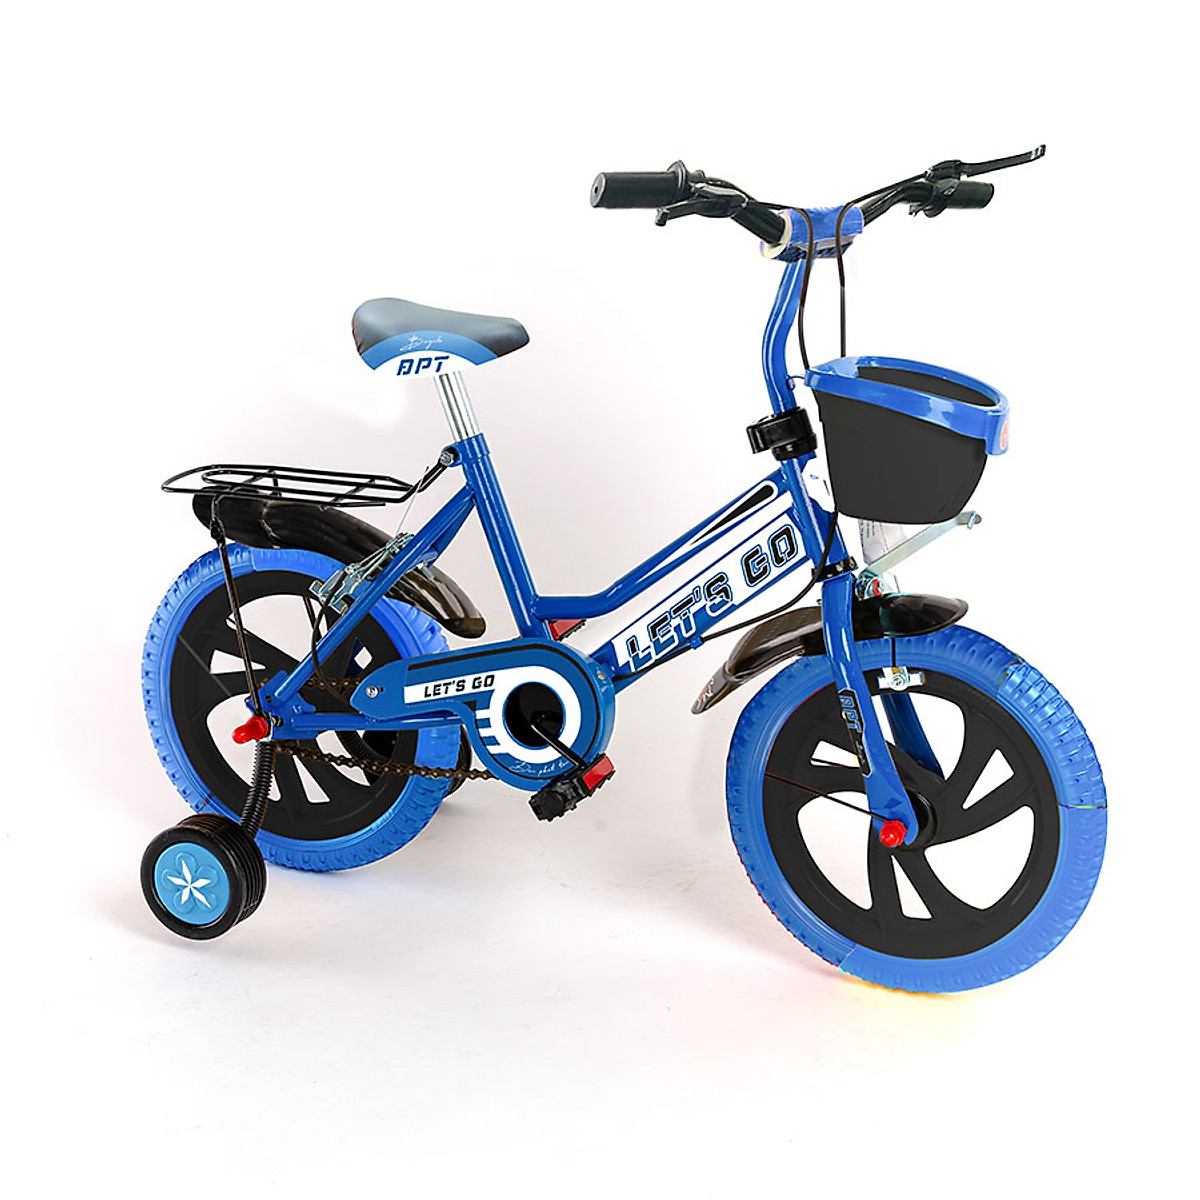 Xe đạp trẻ em 2 bánh Les't go cho bé trai 2-3 tuổi Size